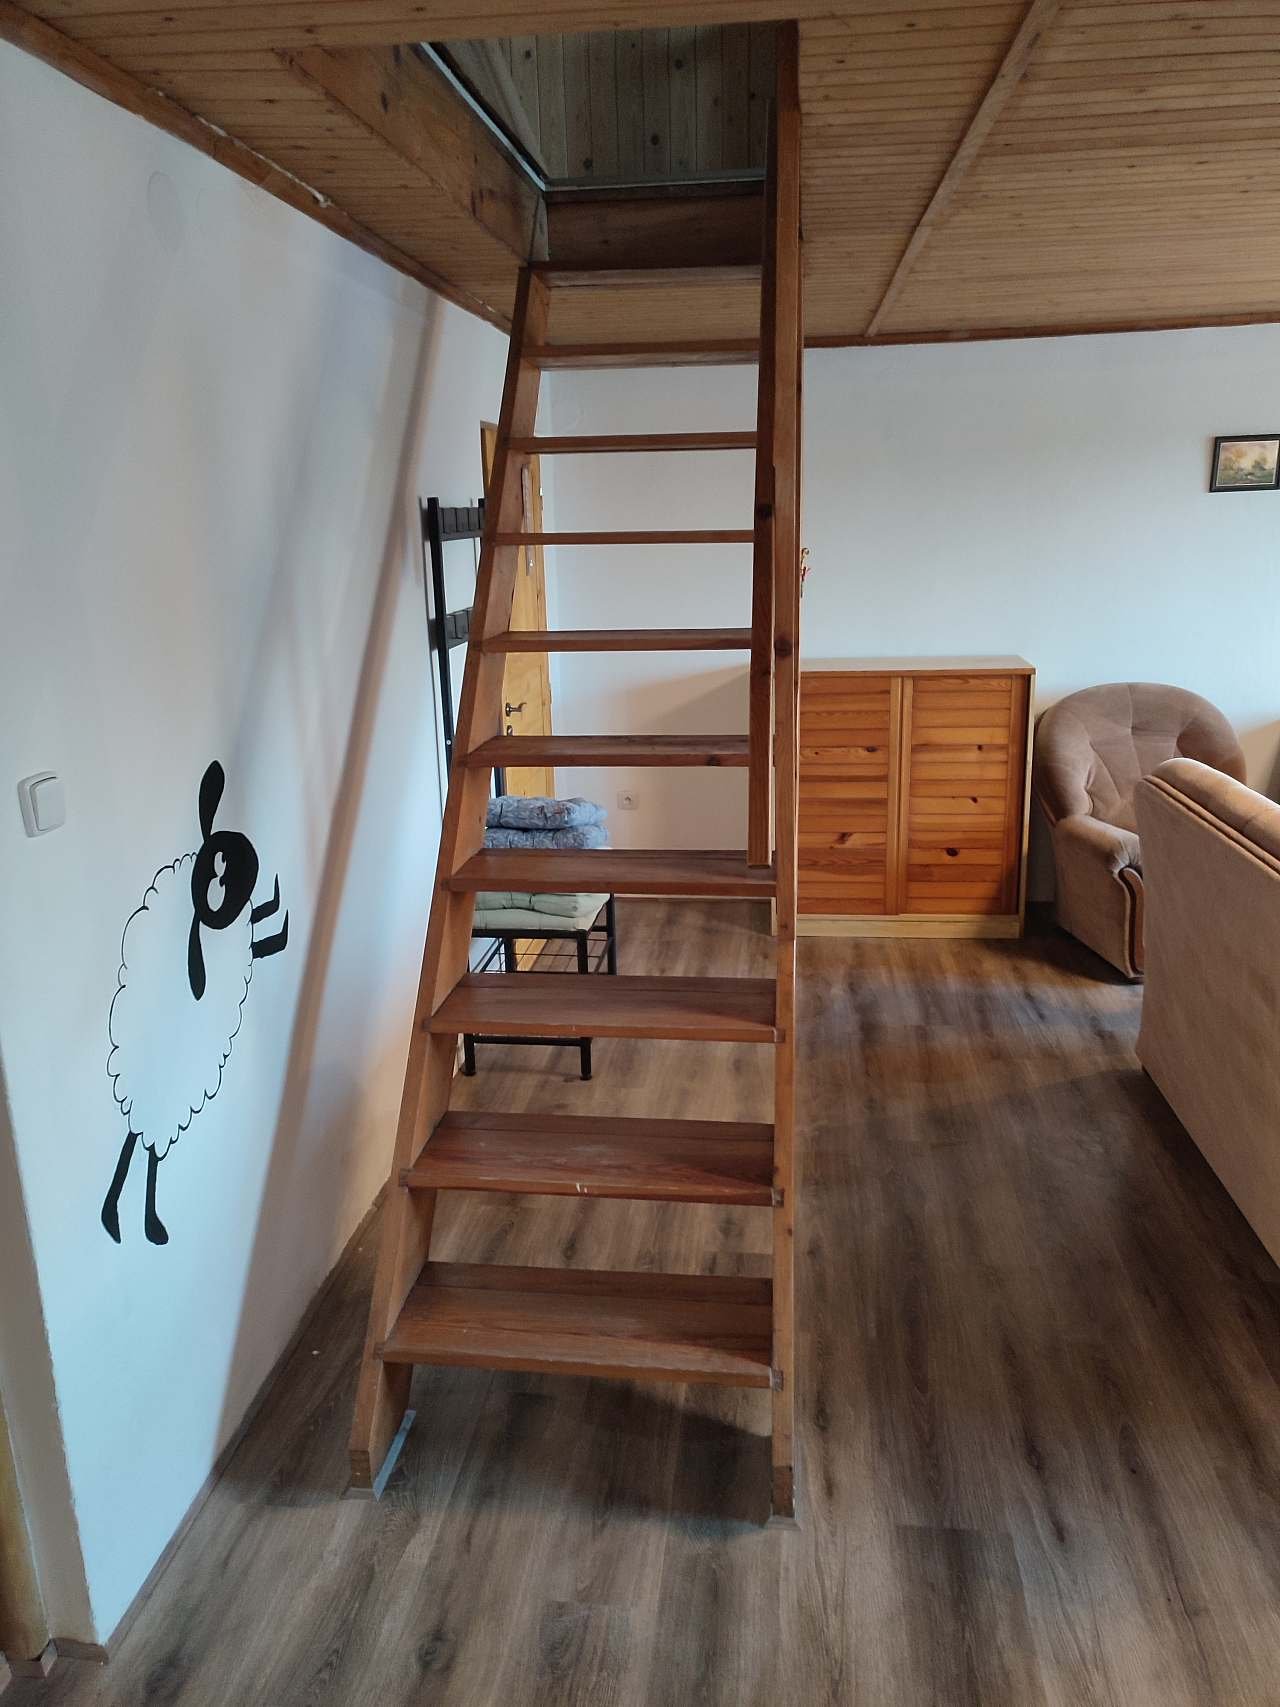 Ubytování Veselá ovečka - schodiště do 1. NP (2x ložnice)